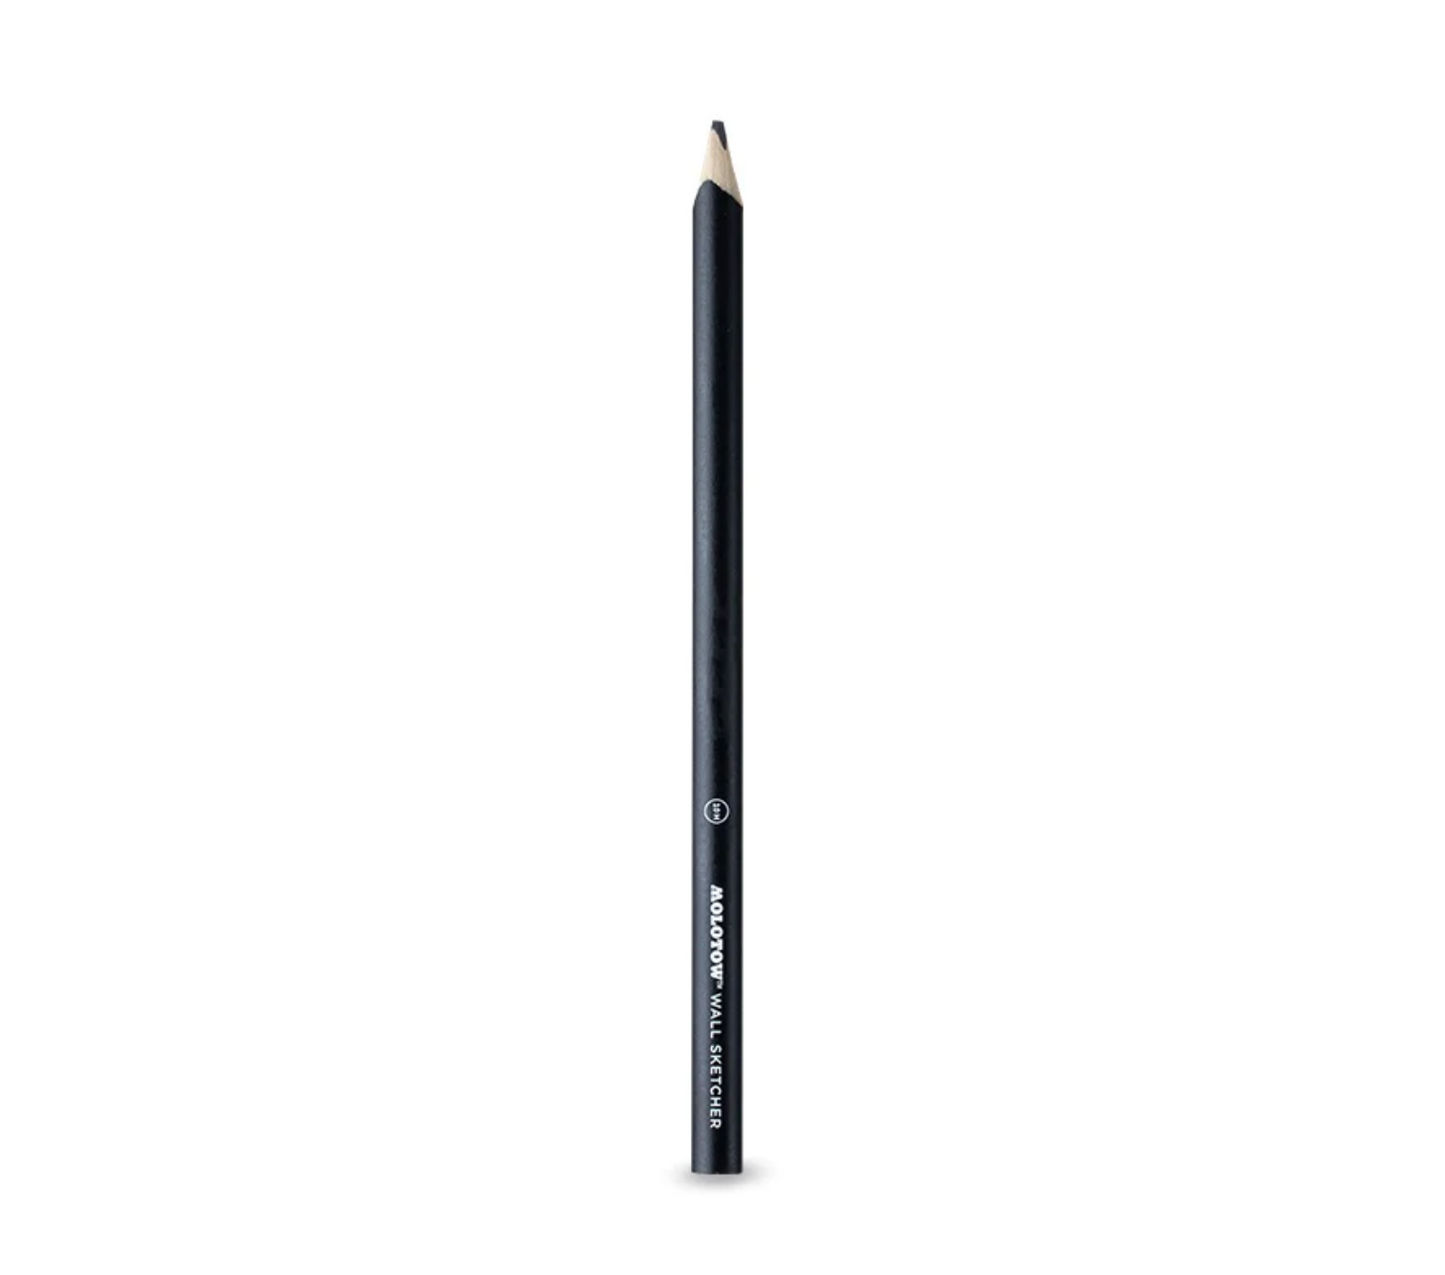 Molotow / Wall Sketcher Lead Pencil